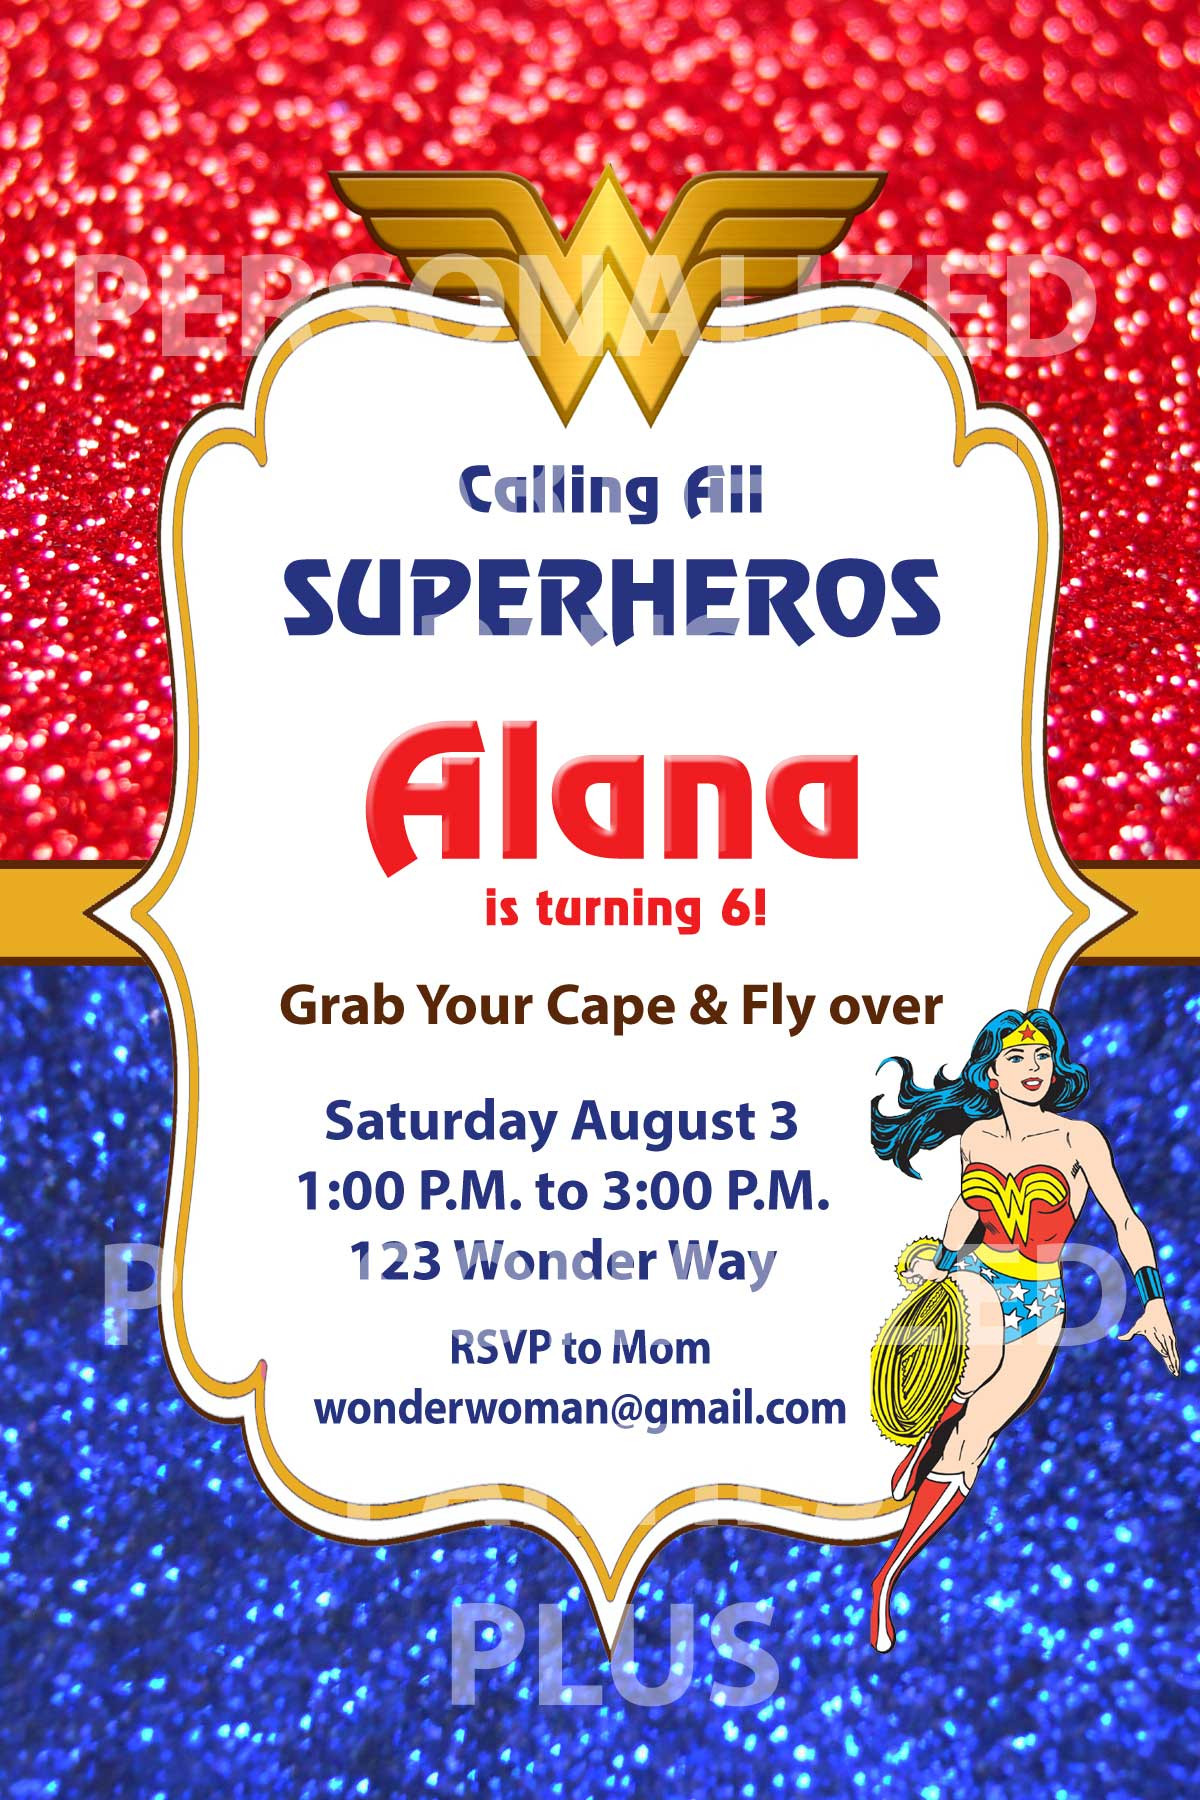 Best ideas about Wonder Woman Birthday Invitations
. Save or Pin Wonder woman birthday invitations Now.